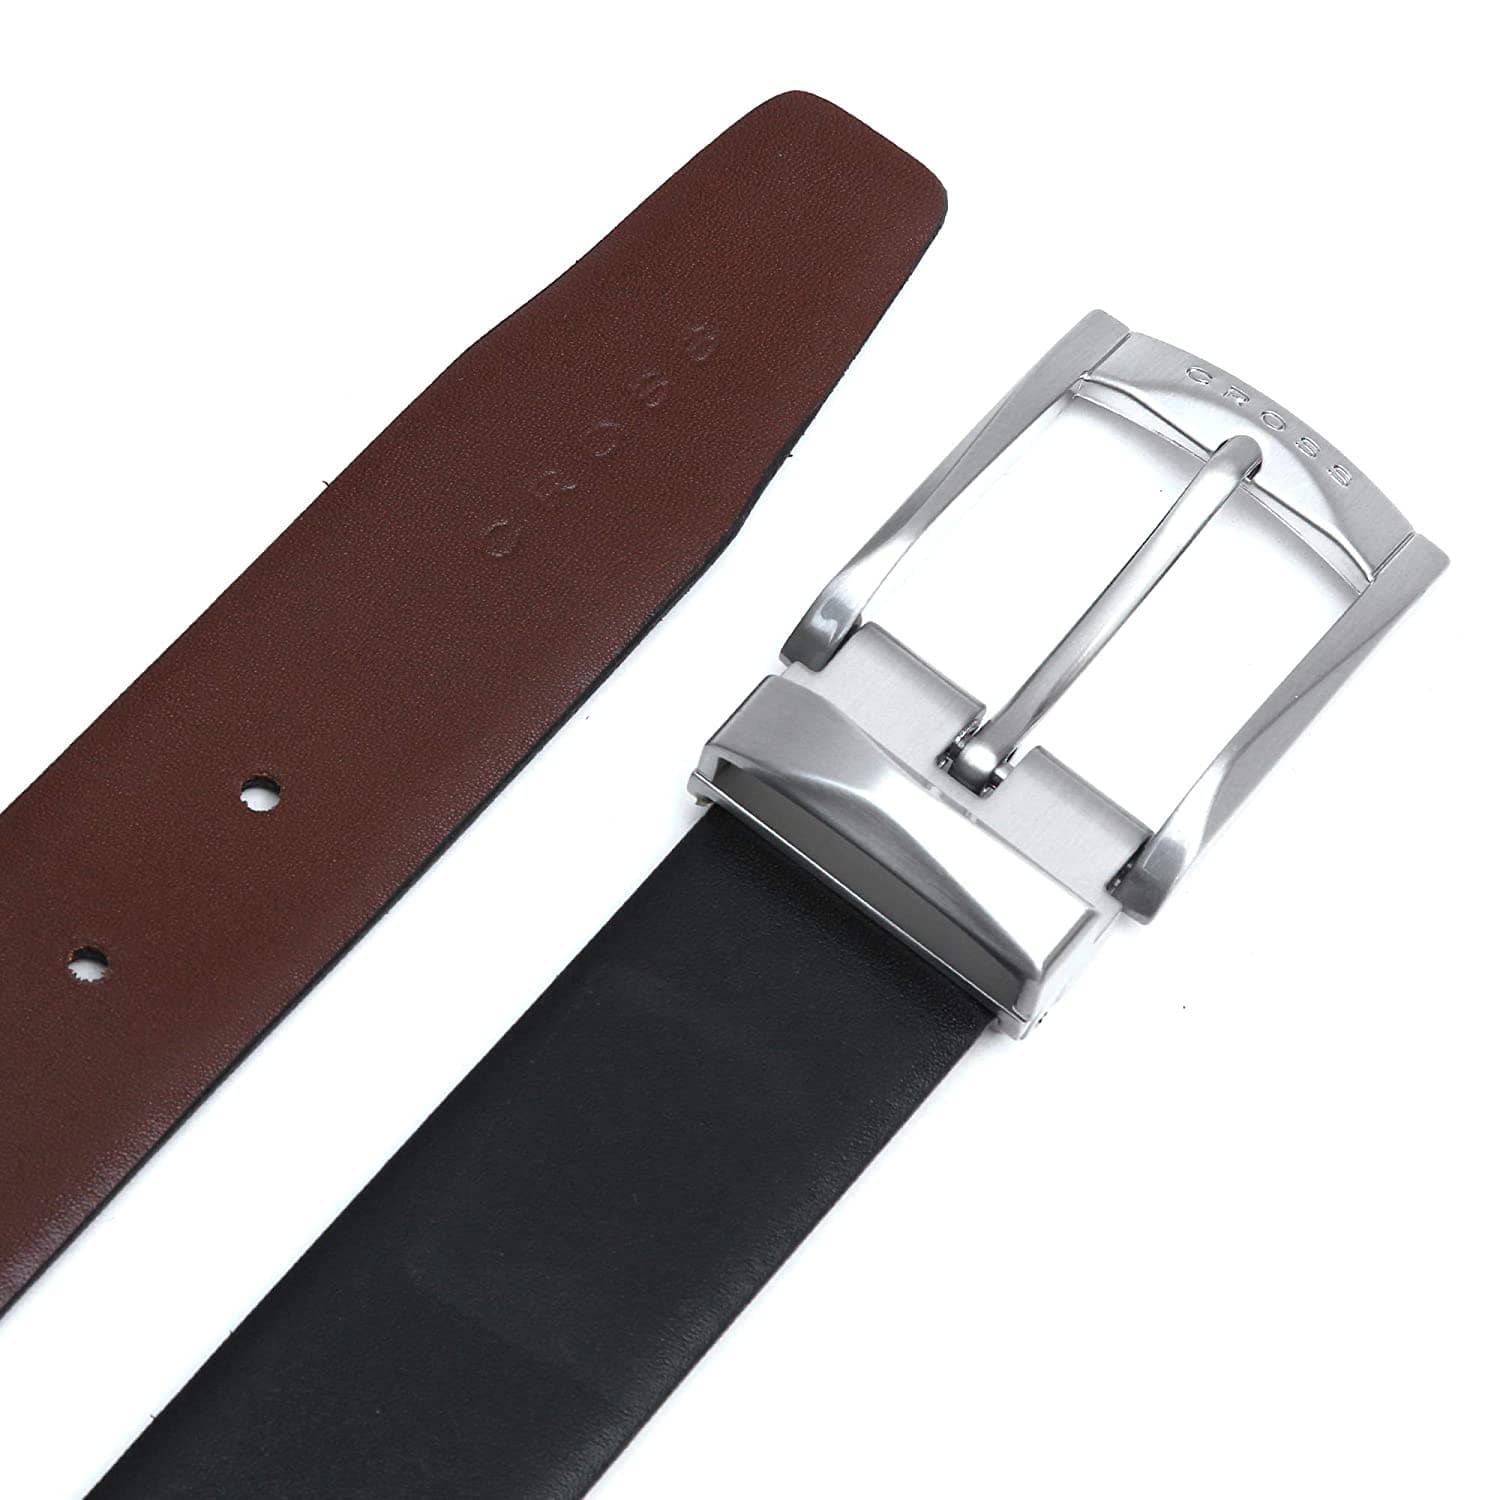 حزام جلدي مميز من كروس مايستر مع مشبك شوكي مقاس 30 مم للرجال XL (102 سم) - أسود وبني - AC1298194-2-XL2